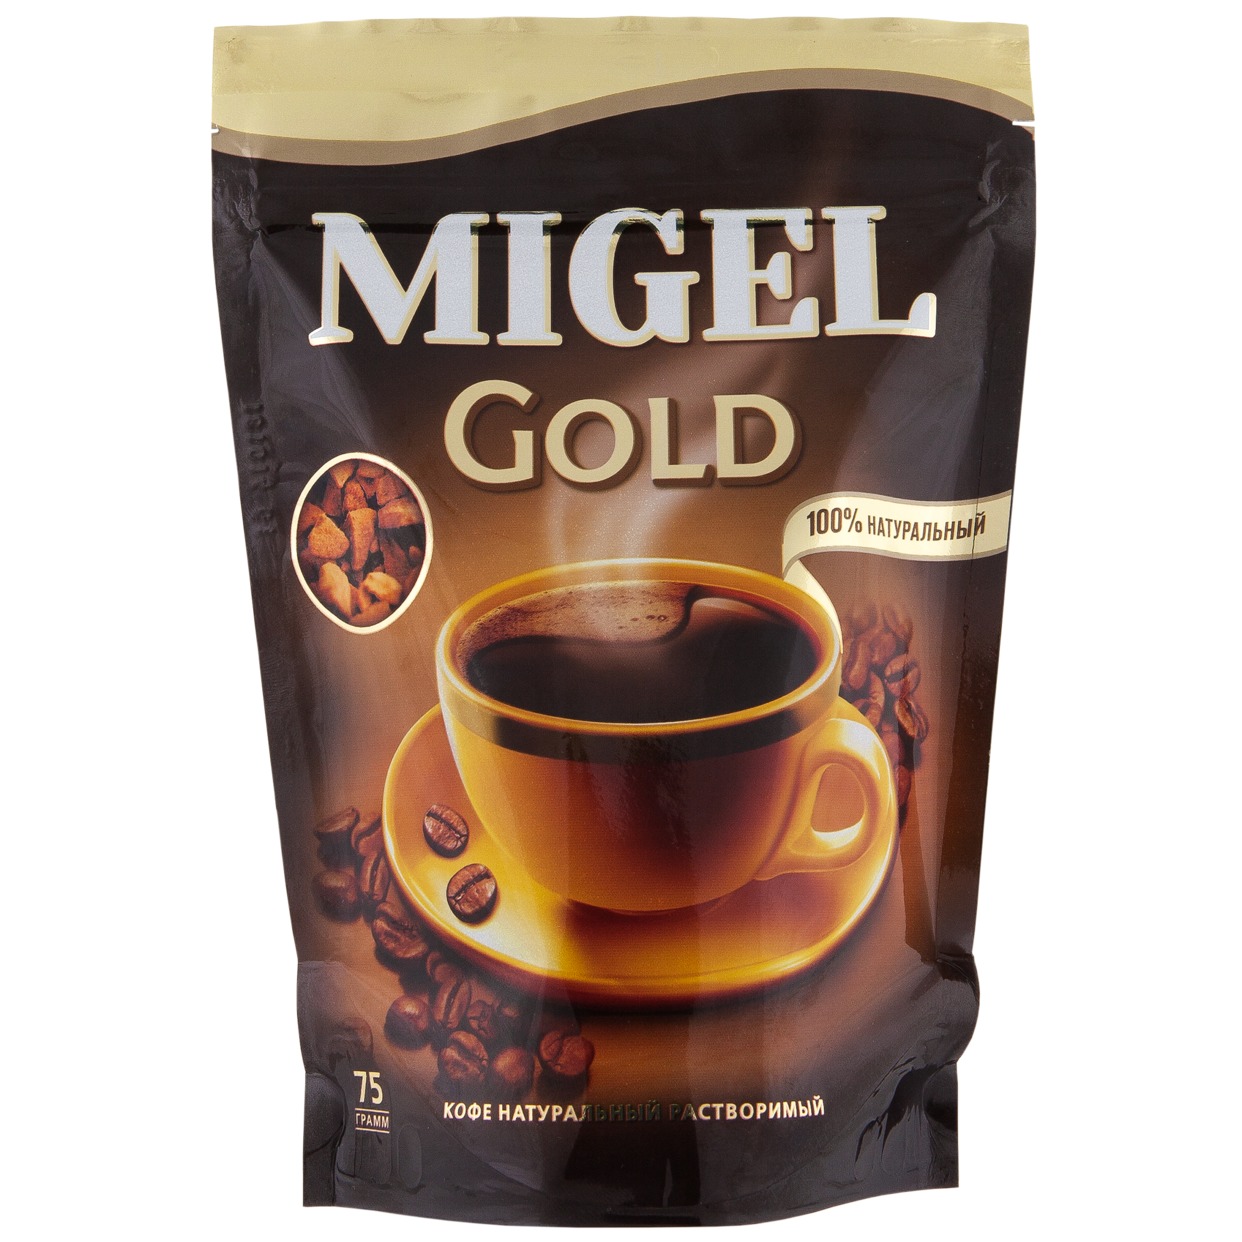 Кофе Migel Gold, растворимый, 75 г по акции в Пятерочке